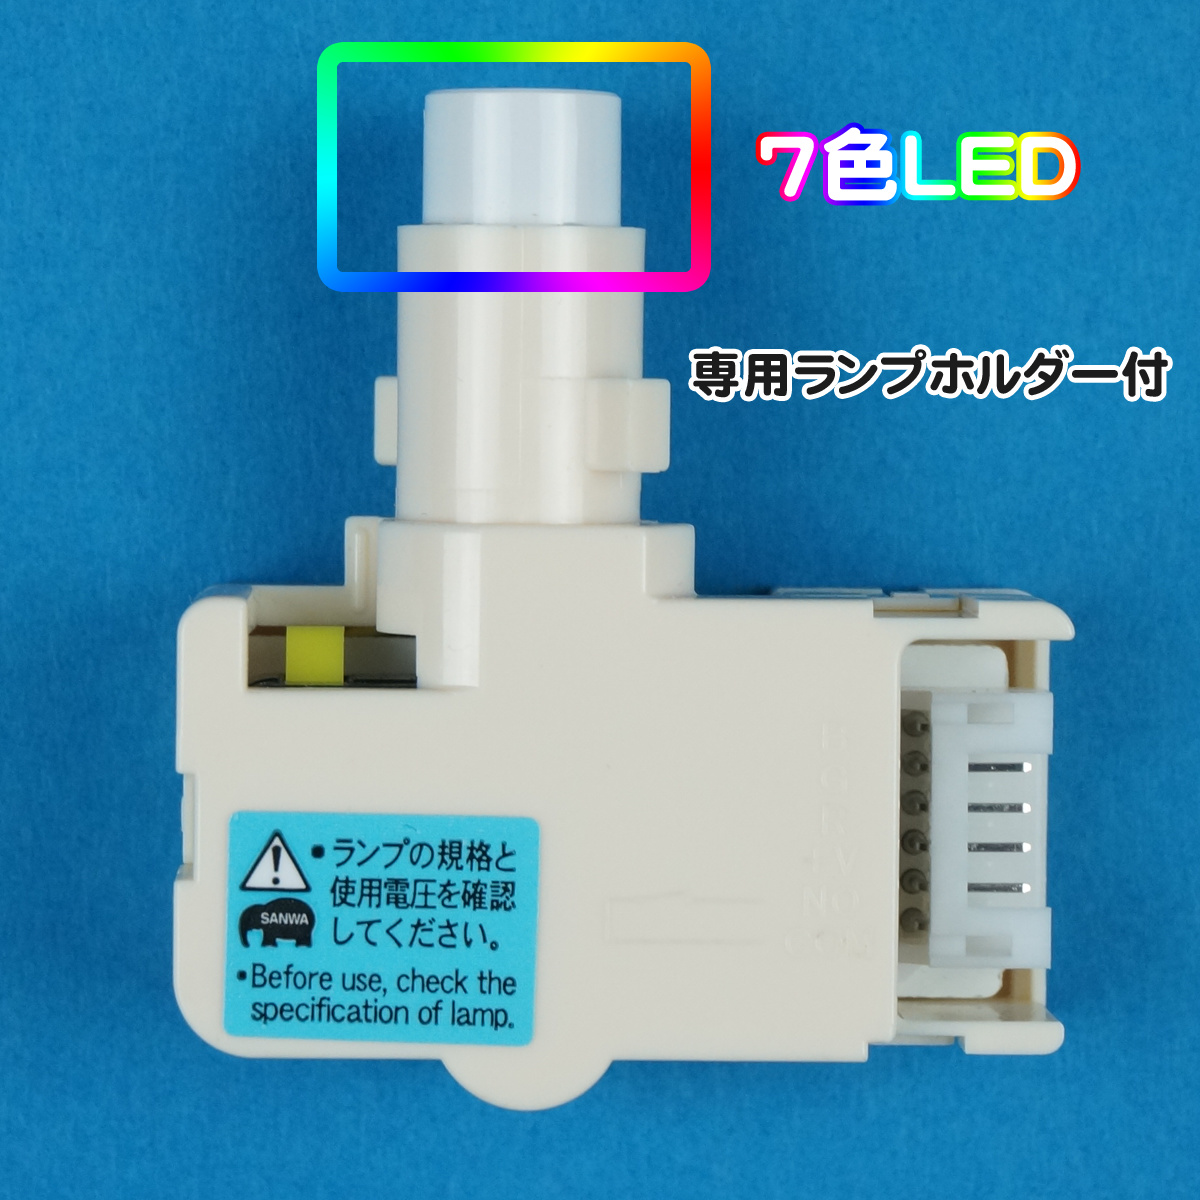 【三和電子】 照光式押しボタン用 7色LED 12V (専用ランプホルダー付) 【OBSA-LHS7F2-LED-7-12V】